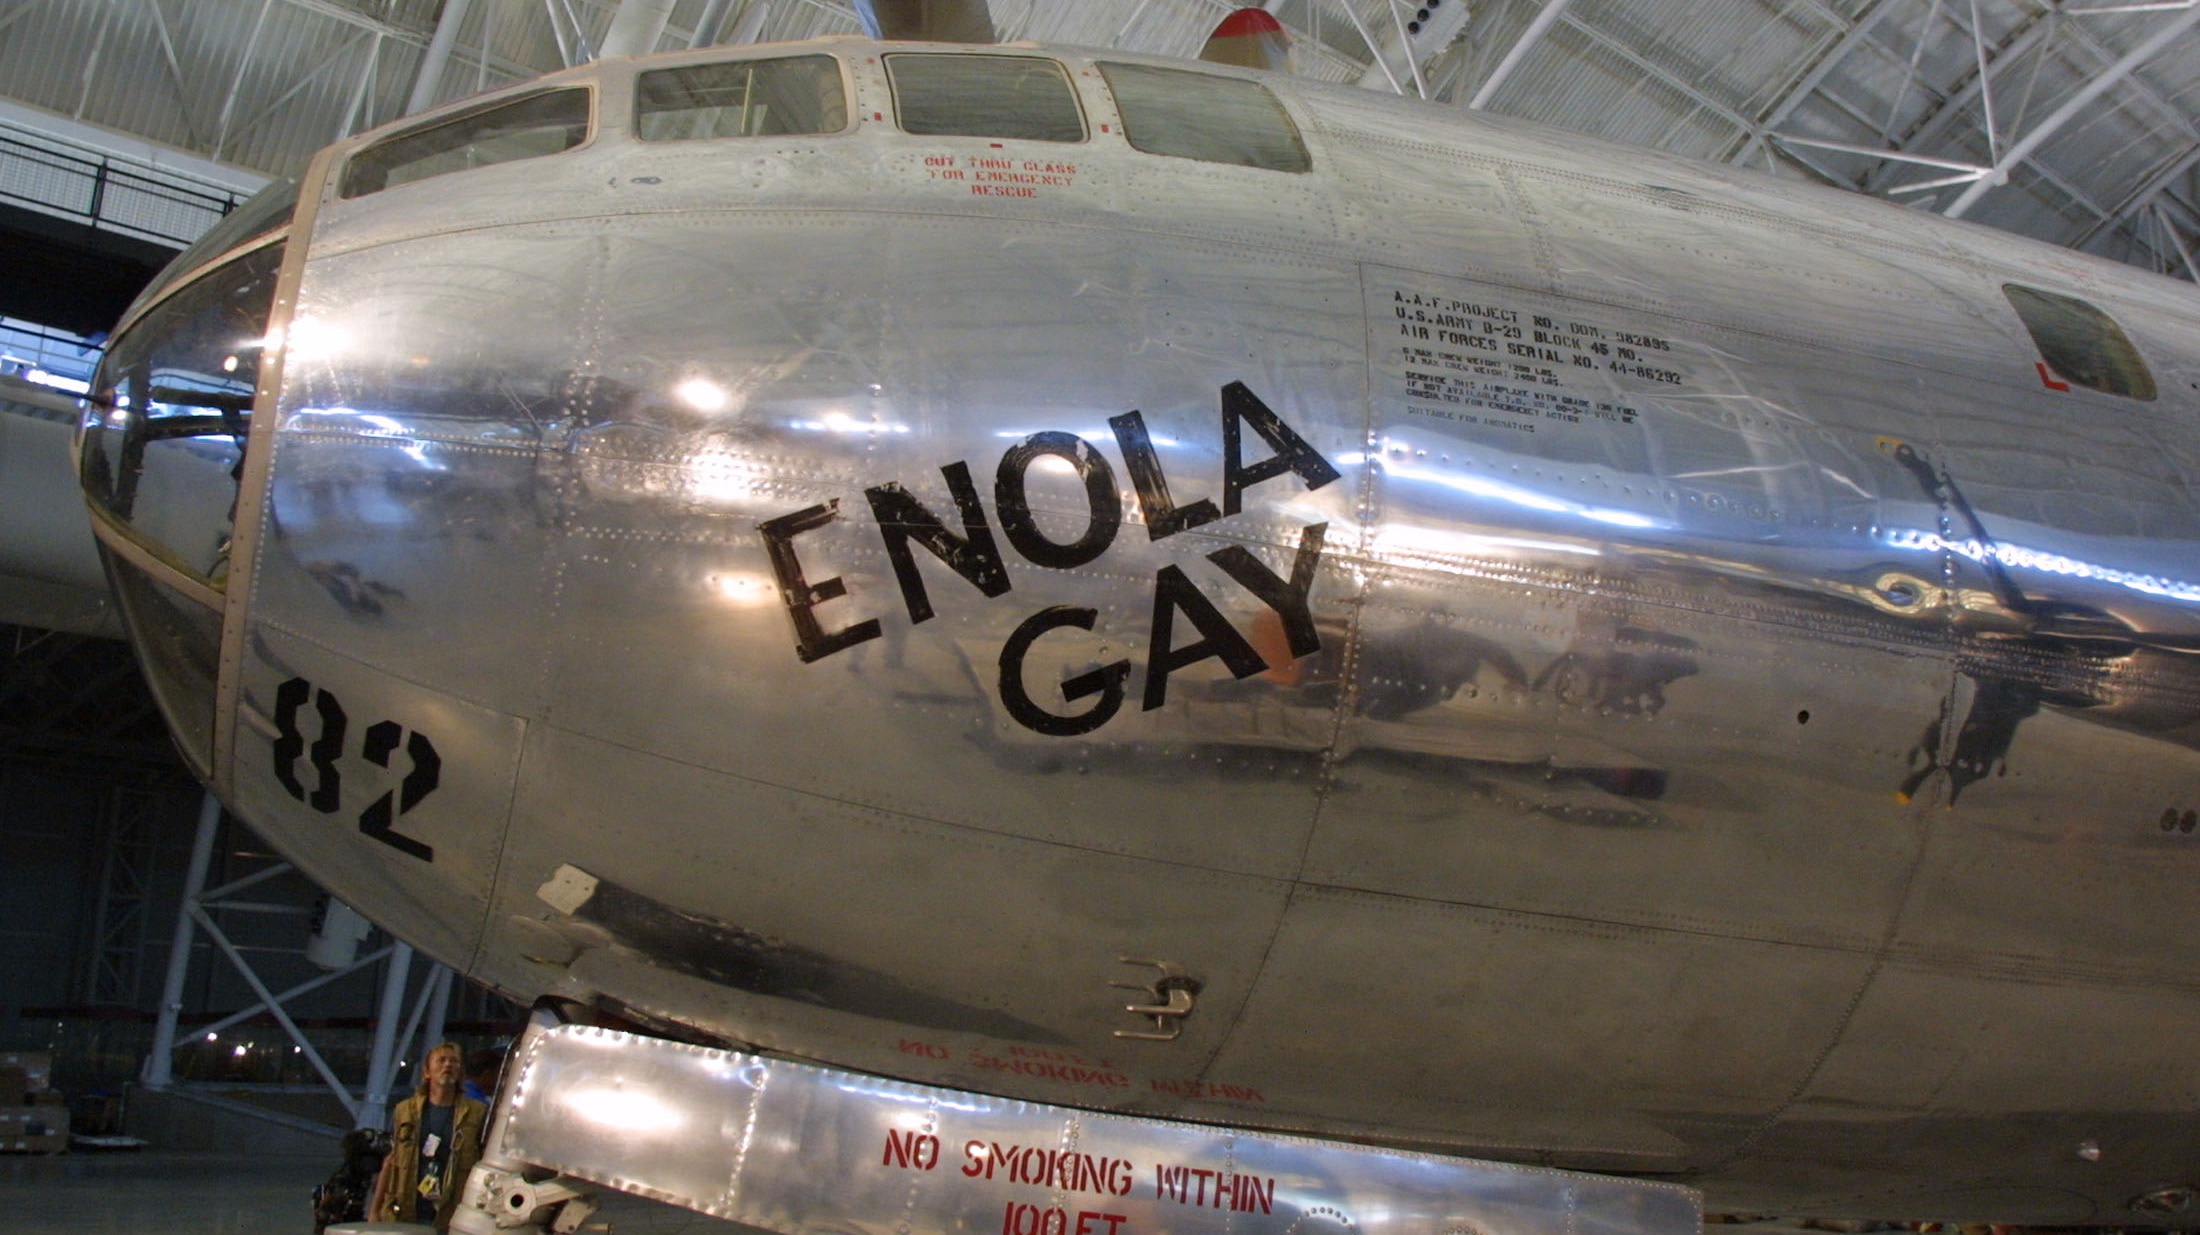 1995 enola gay exhibit